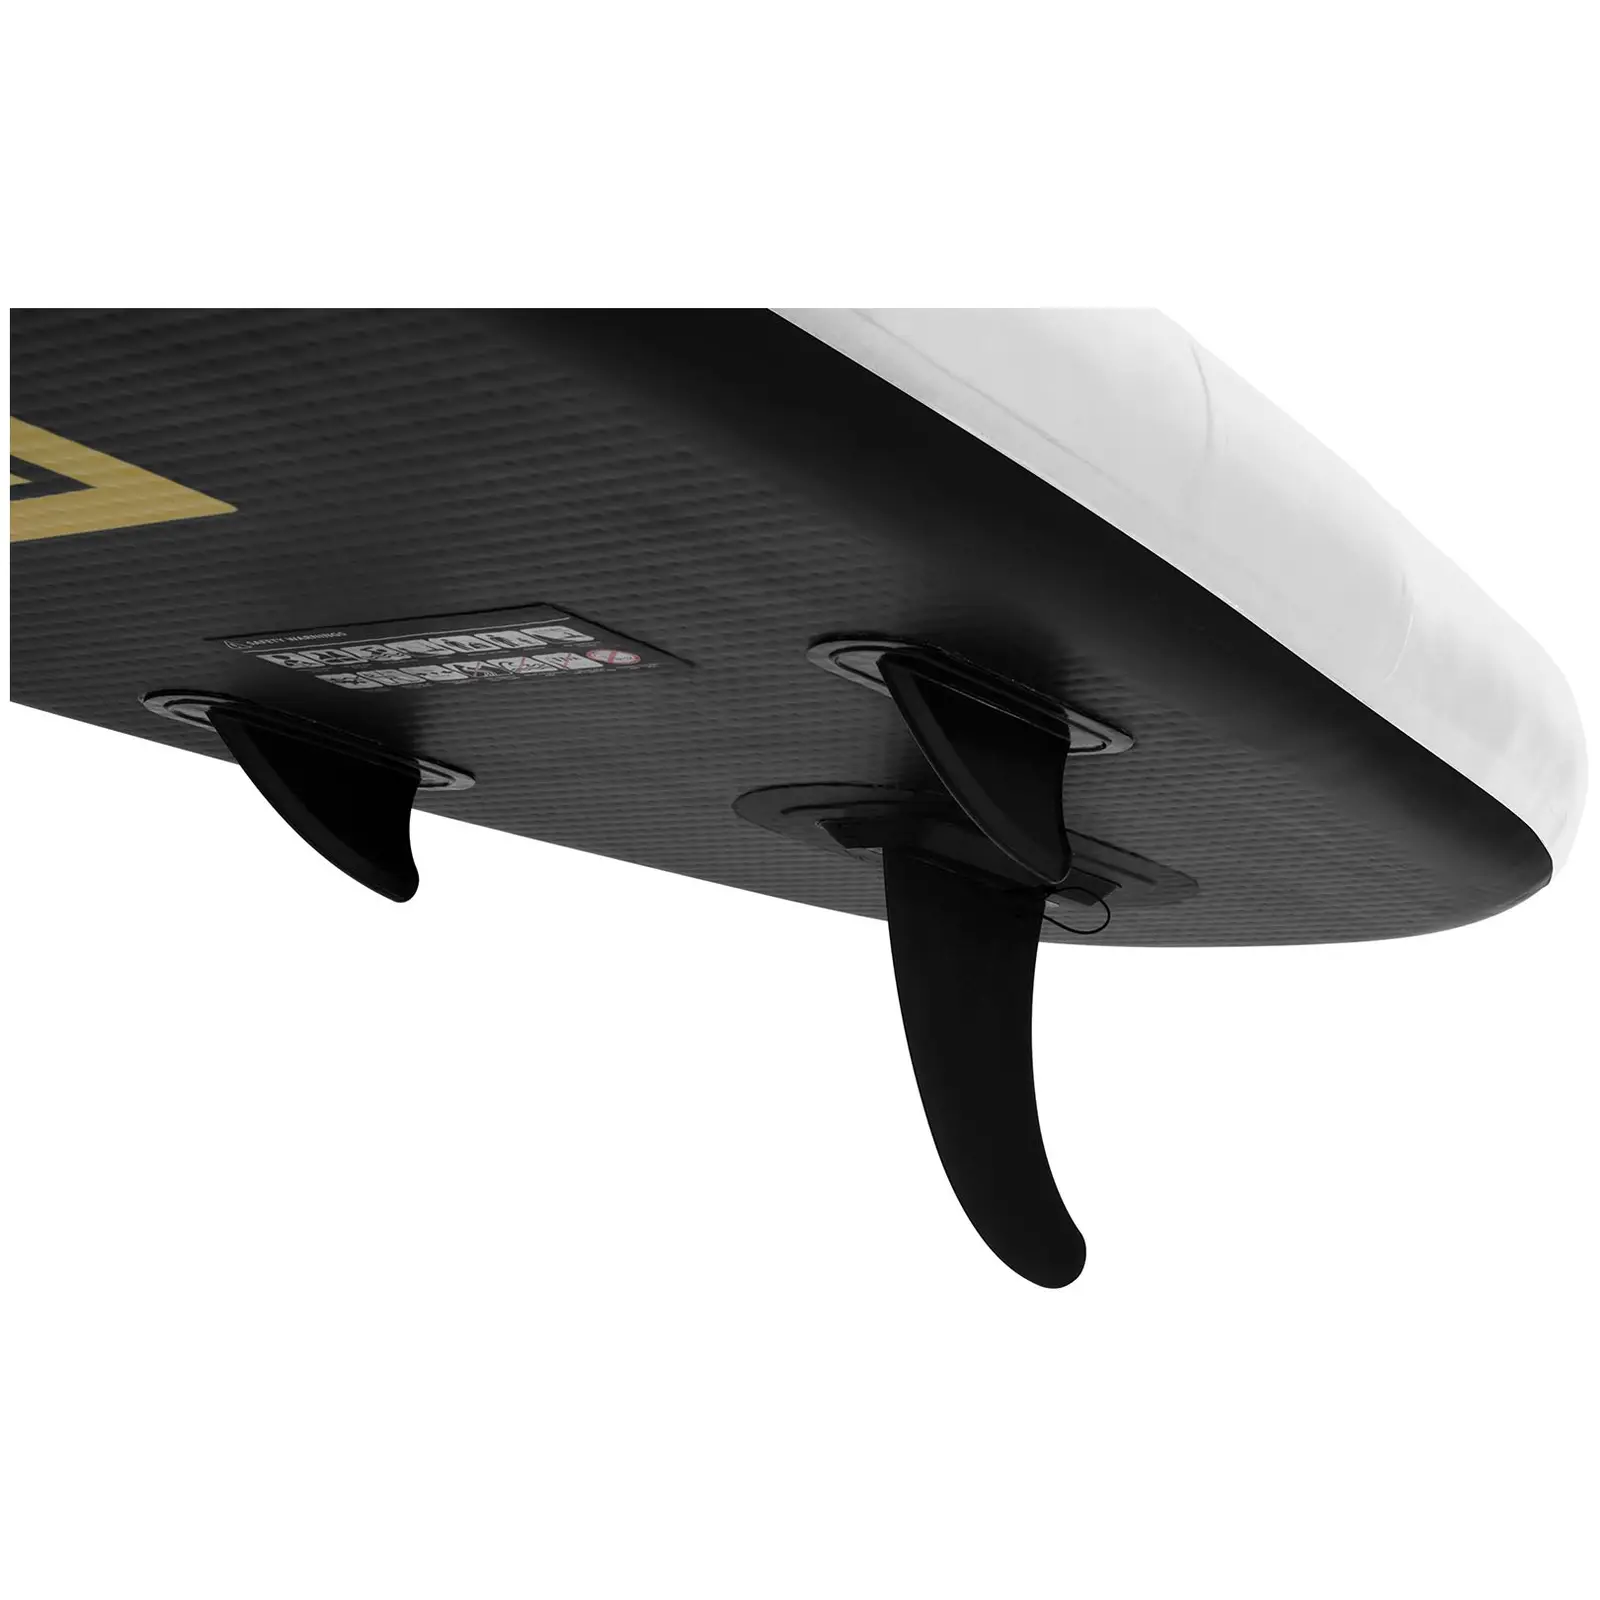 Paddle-board - 145 kg - 335 x 71 x 15 cm